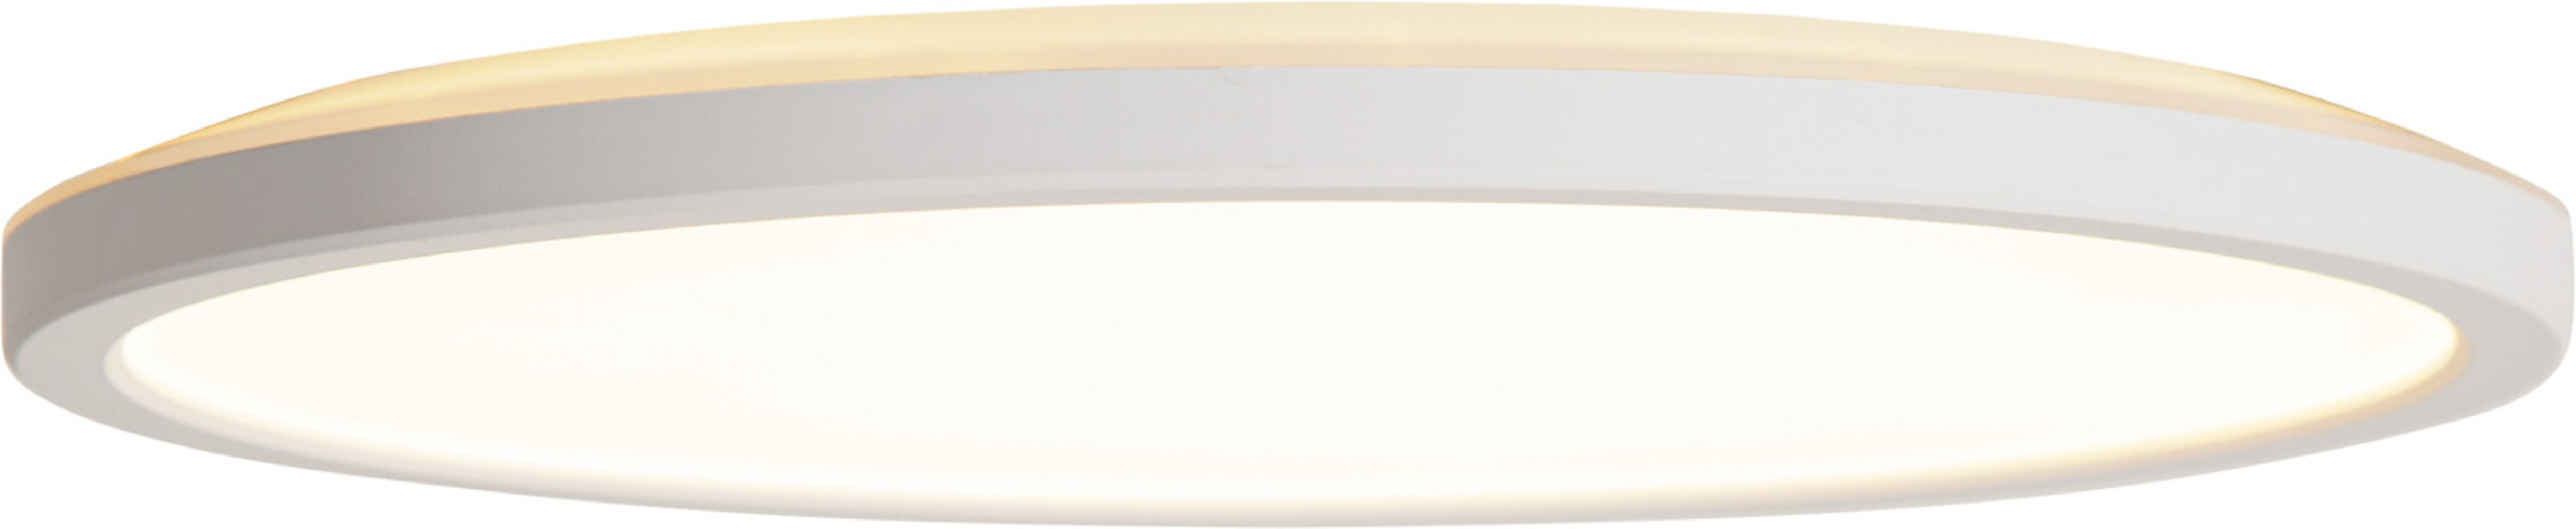 Helle weiße LED-Deckenleuchte von Star Trading mit intuitivem Design und warmem Licht